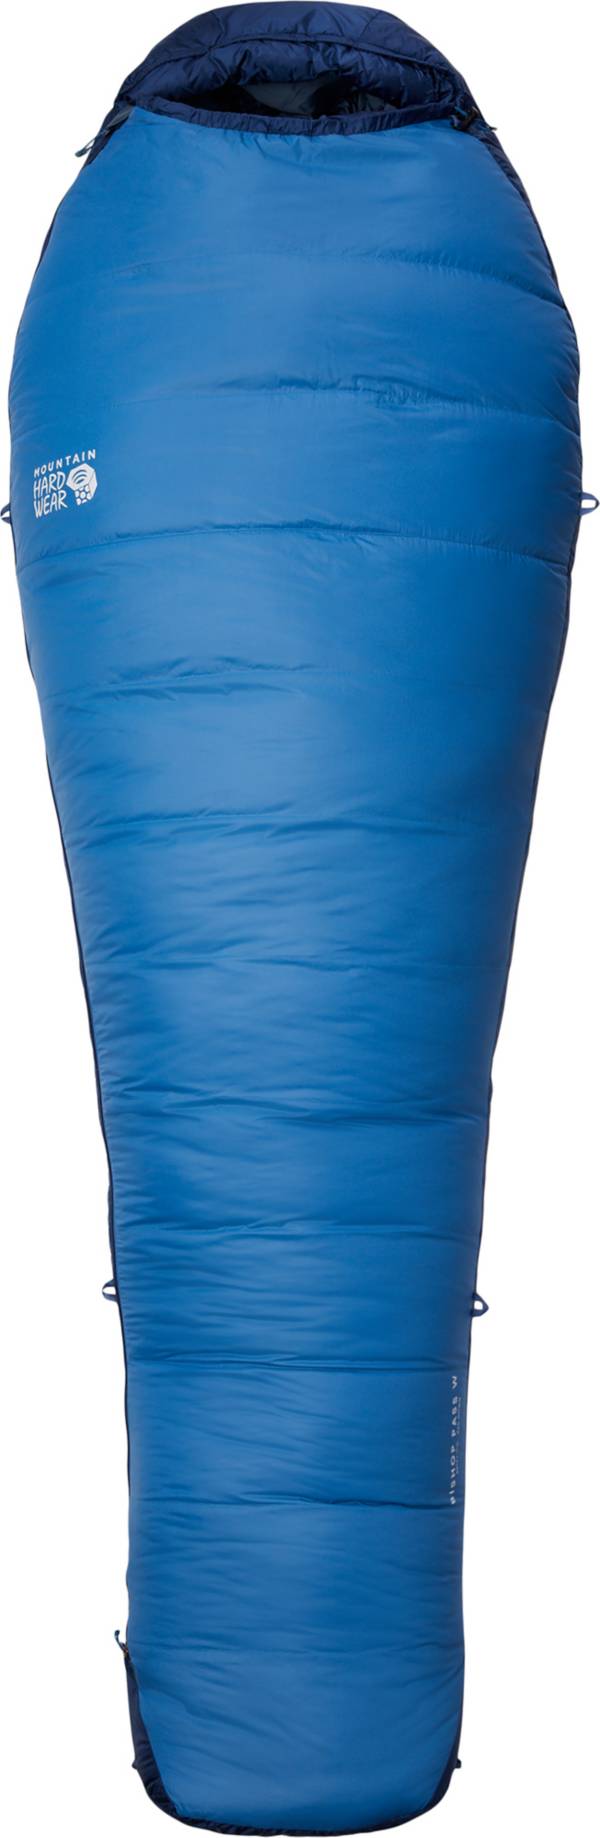 Mountain Hardwear Women's Bishop Pass 30°F Sleeping Bag product image